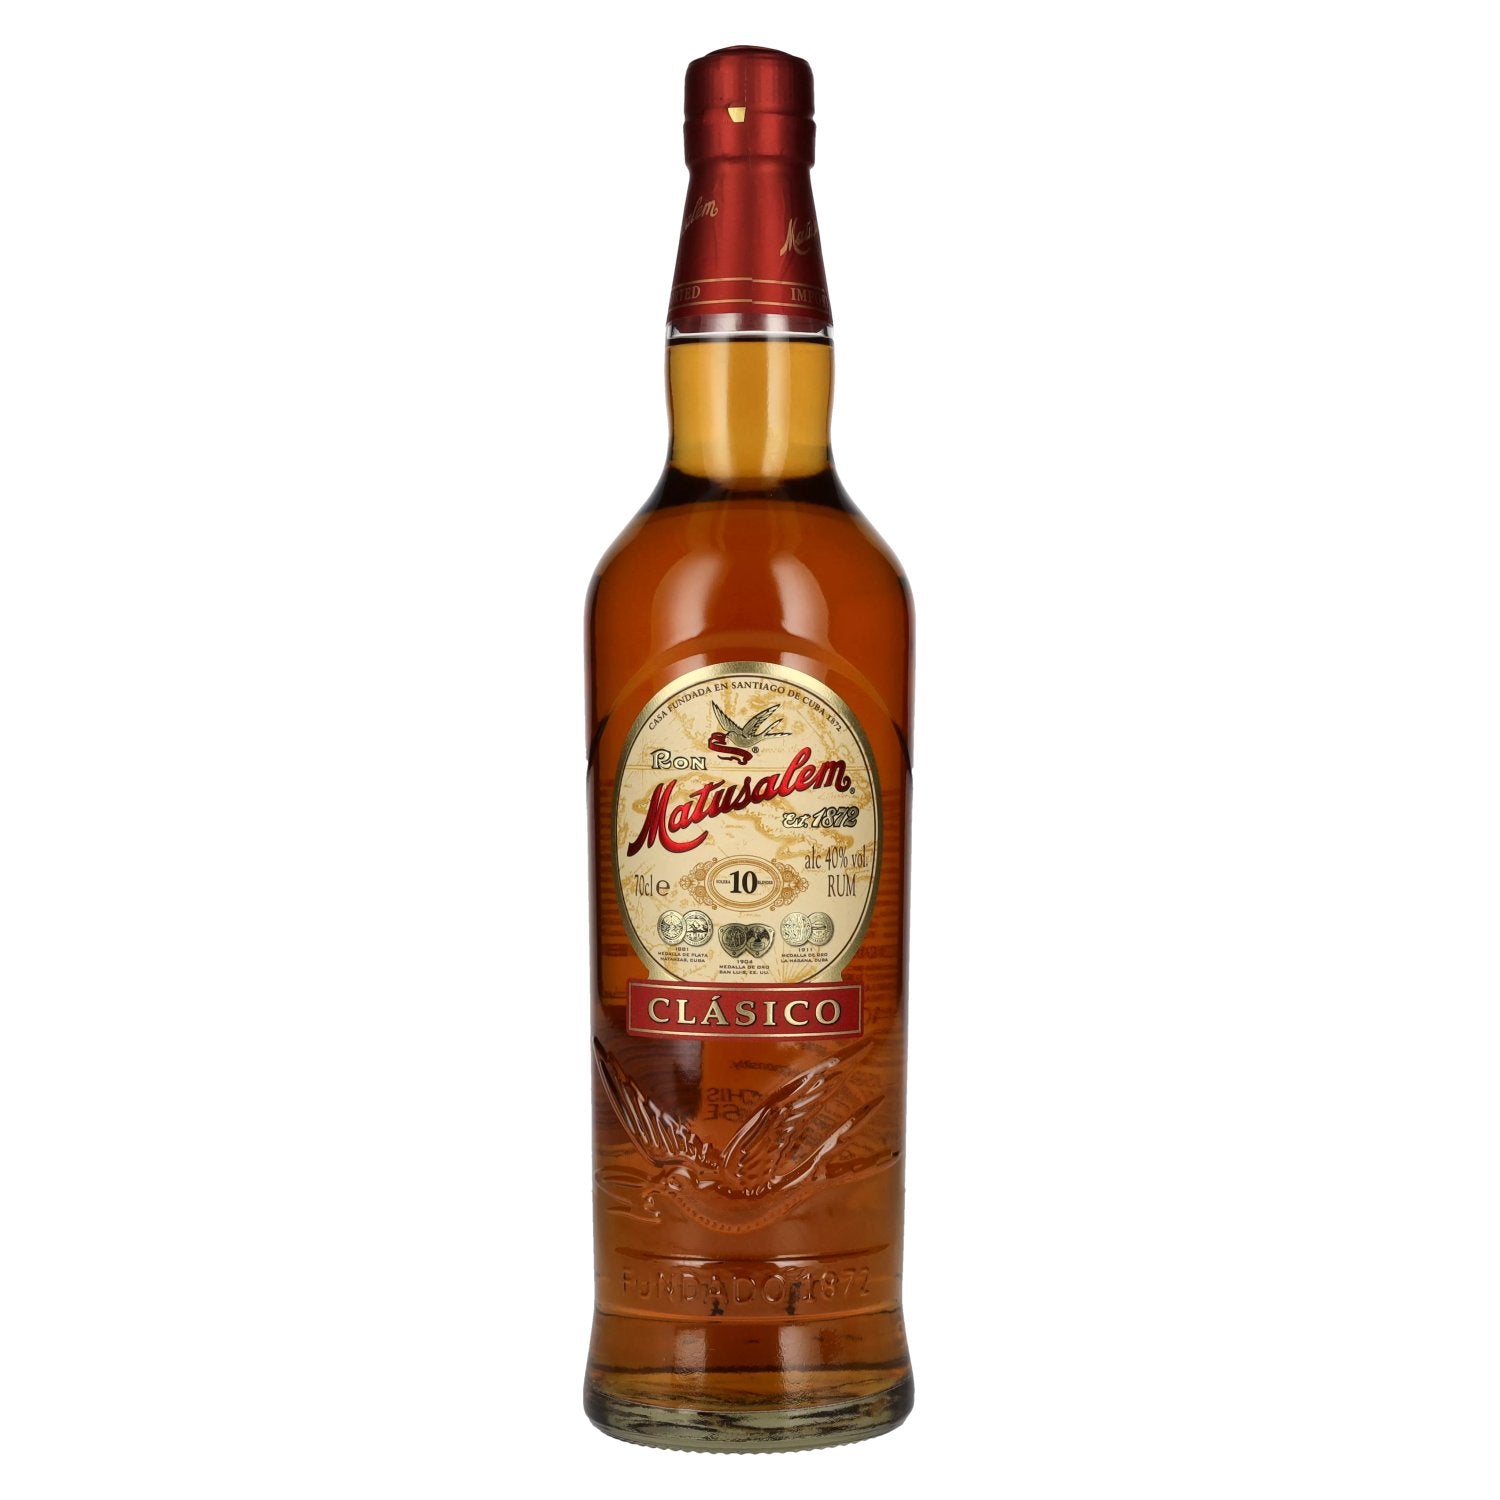 Ron Matusalem 10 Solera CLASICO Rum 40% Vol. 0,7l